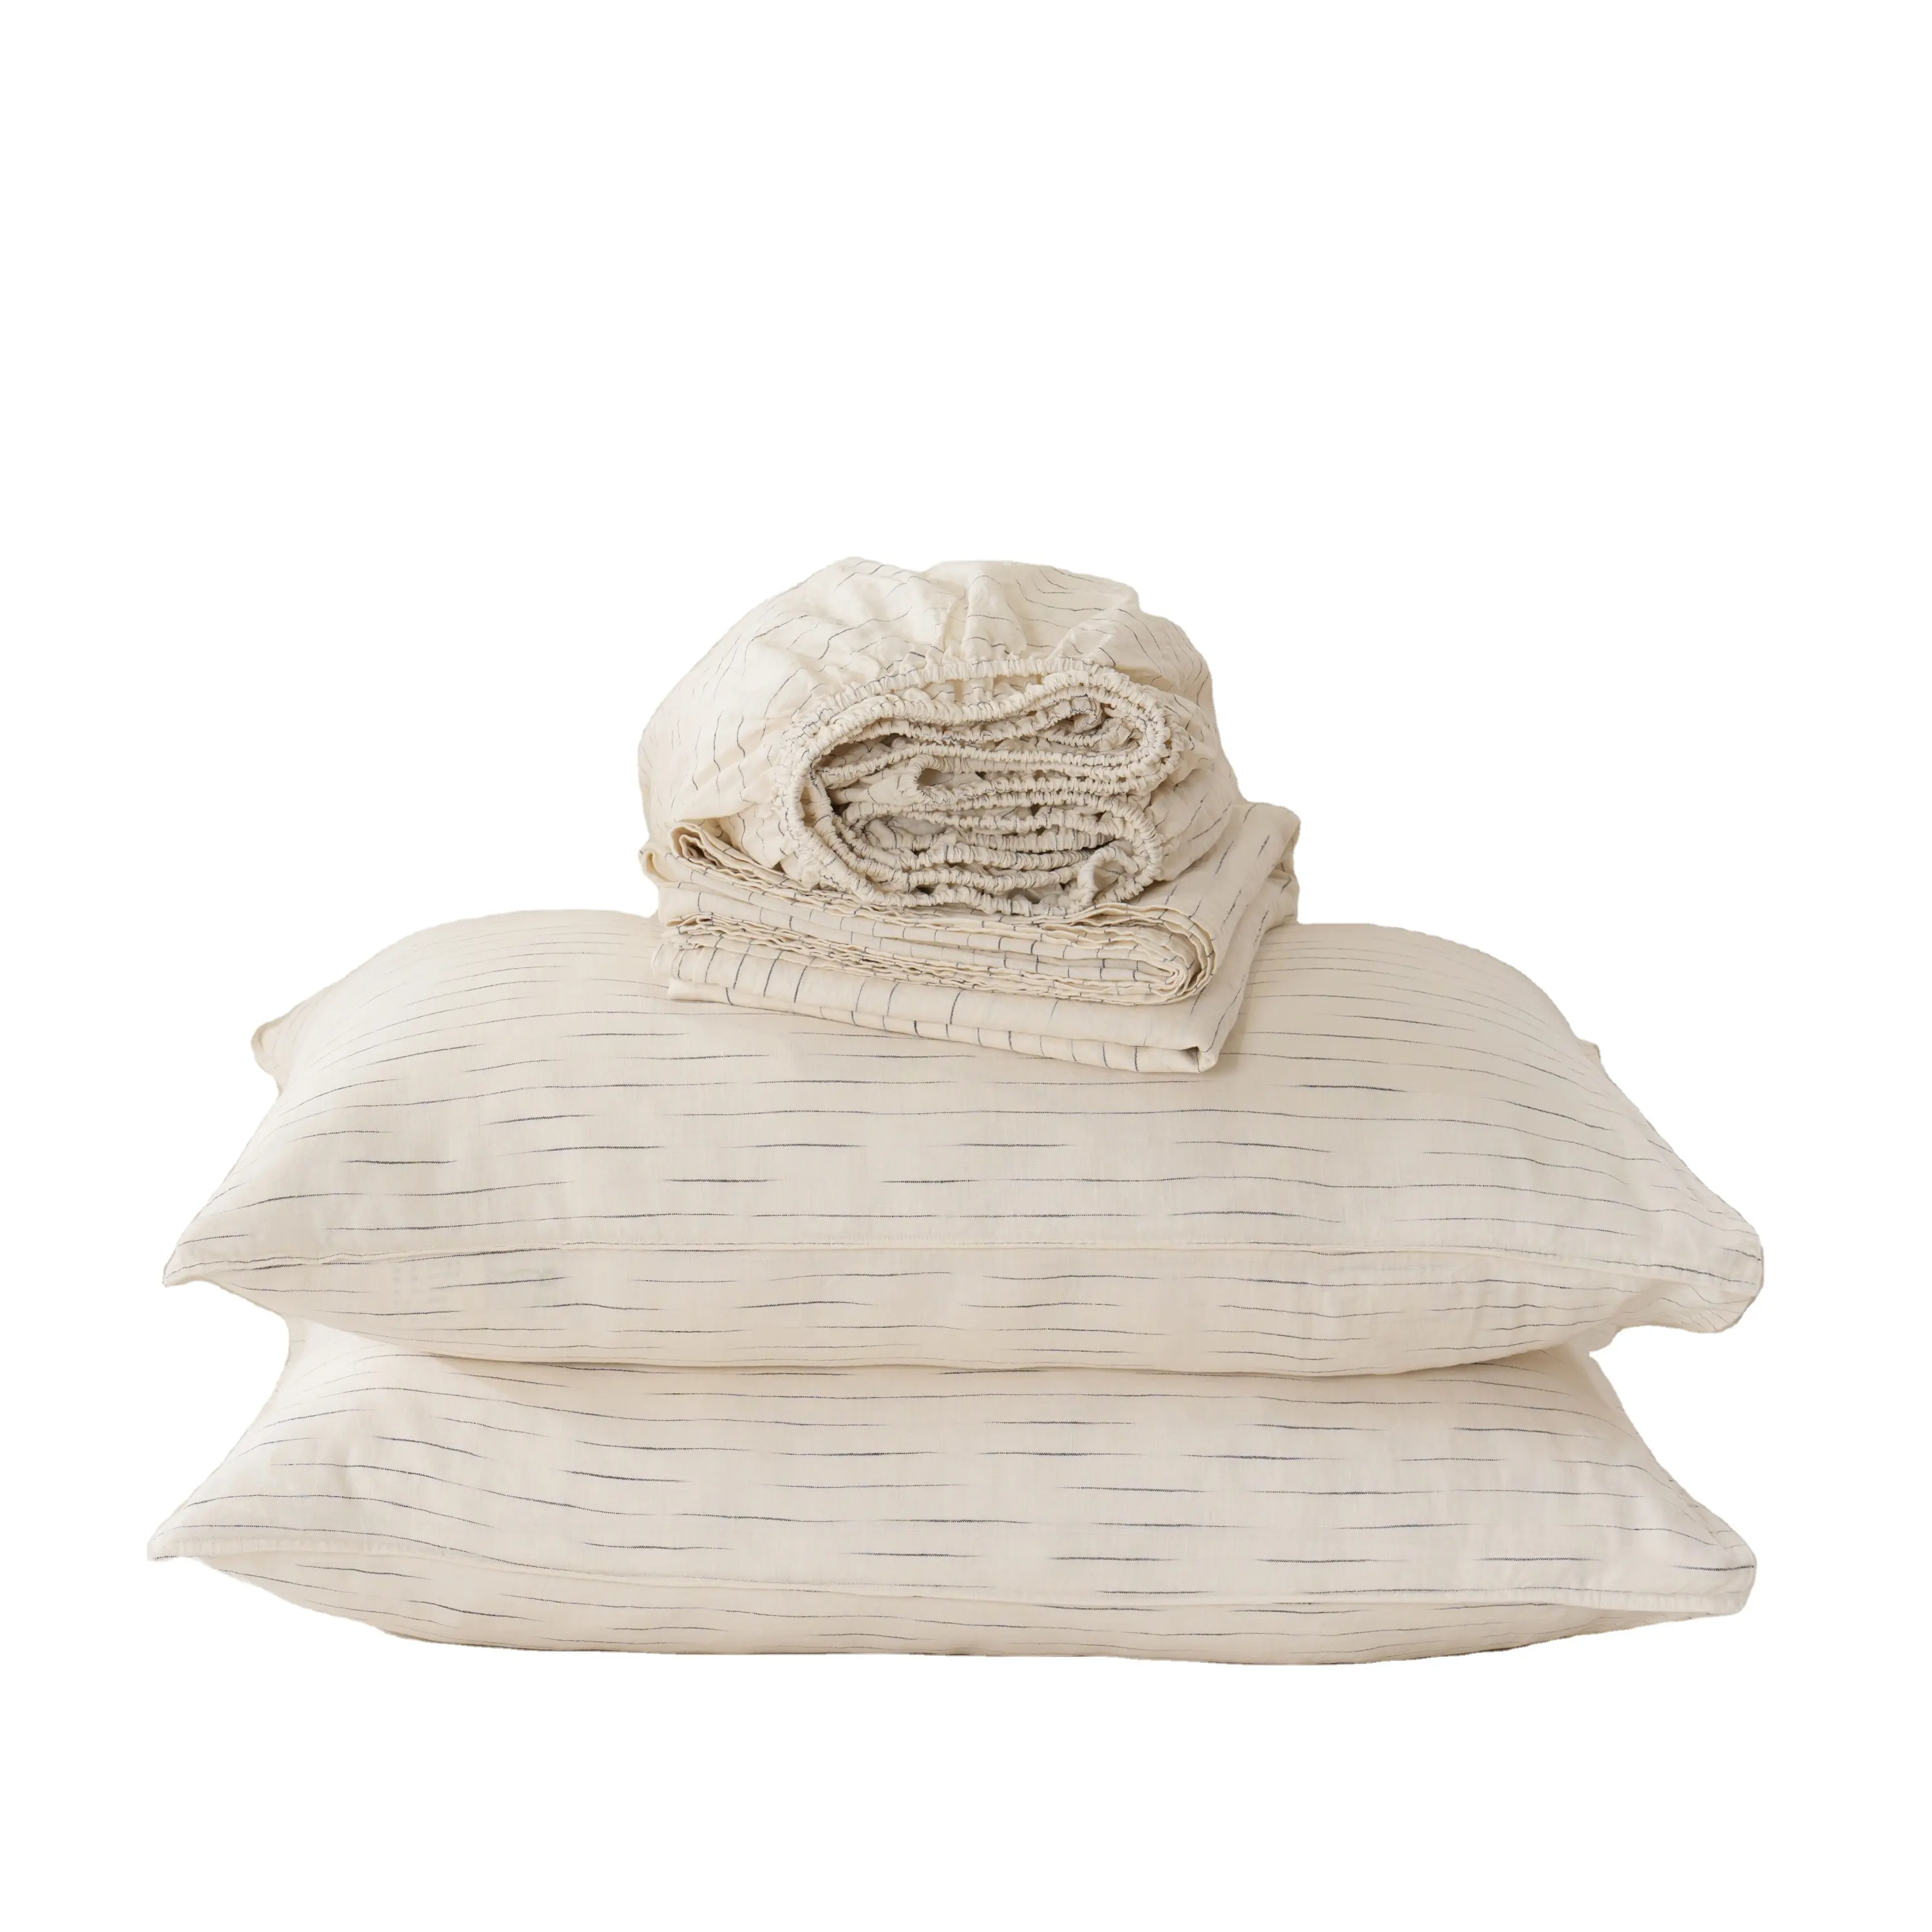 特別な工芸品の断続的な染めヴィンテージ寝具フレンチフラックスストライプリネンシーツ羽毛布団カバーセット